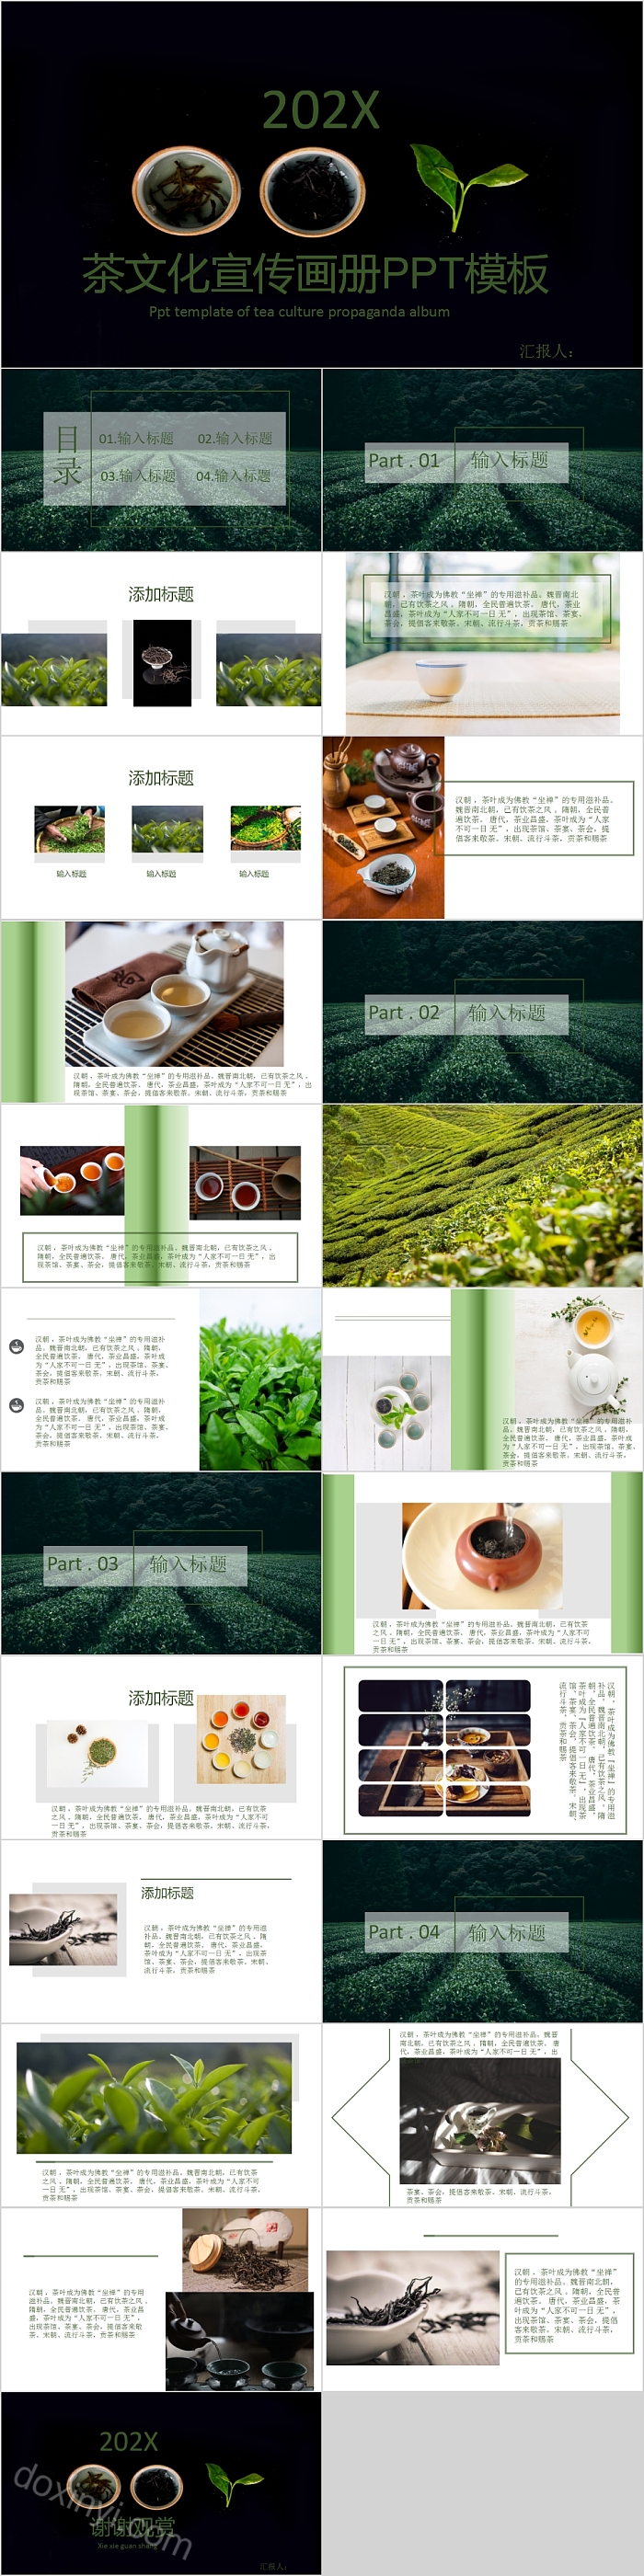 中国风茶文化宣传画册PPT模板